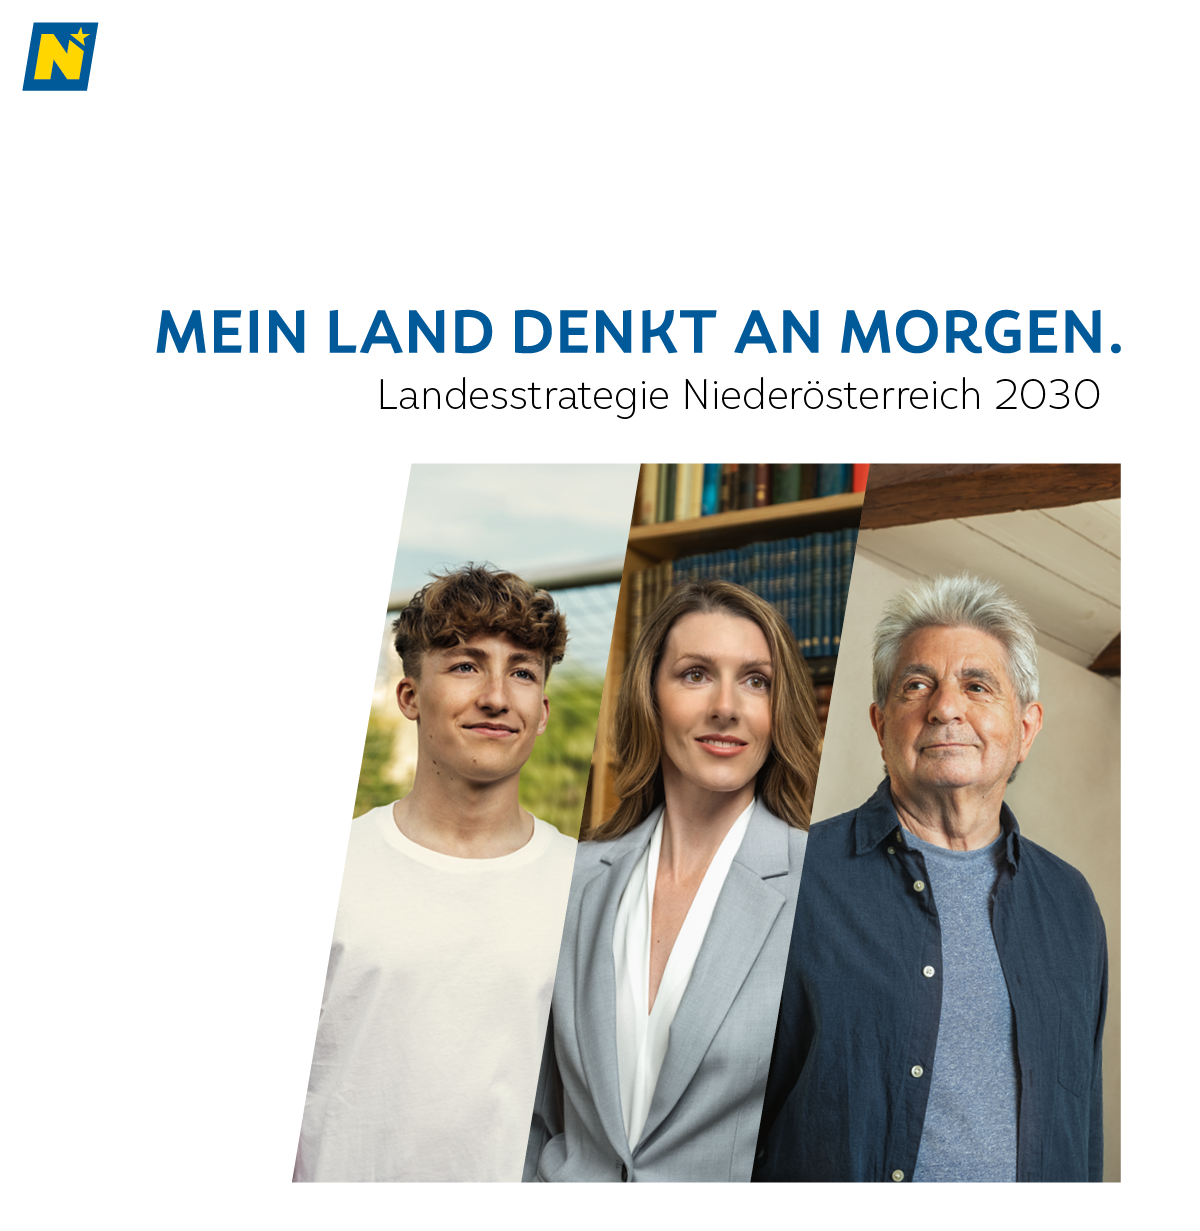 Text: Mein Land denkt am morgen, Landesstrategie 2030 Niederösterreich; Bild: Junger Mann, berufstätige Frau, älterer Herr blicken in die Zukunft